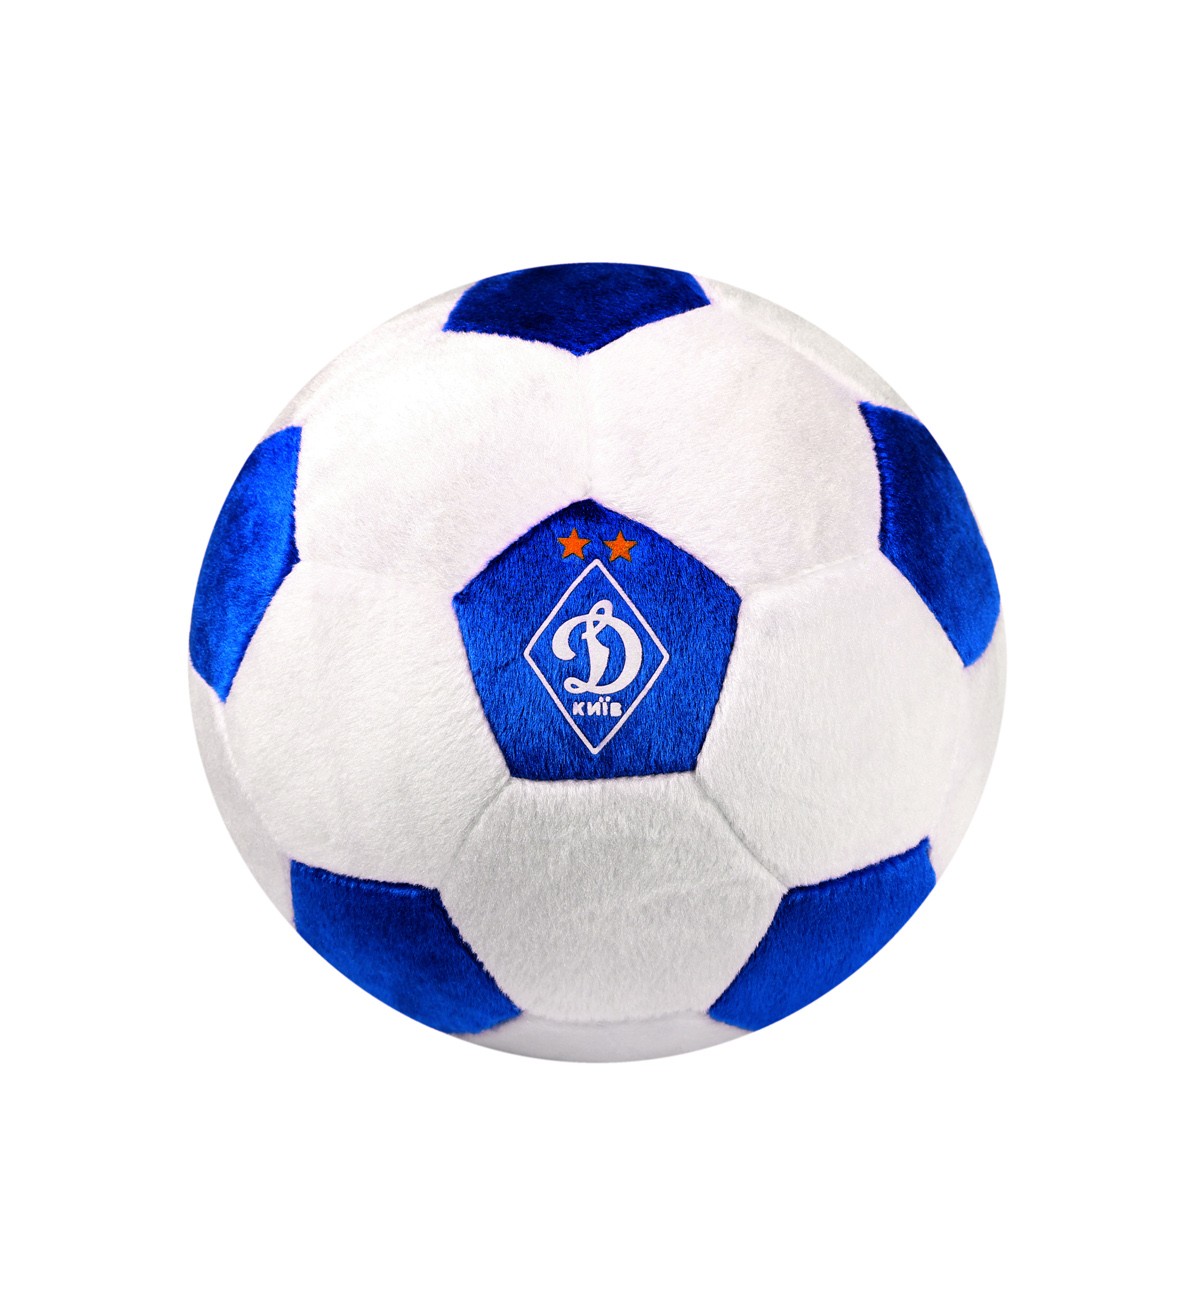 Pillow-ball "Dynamo" (Kyiv).